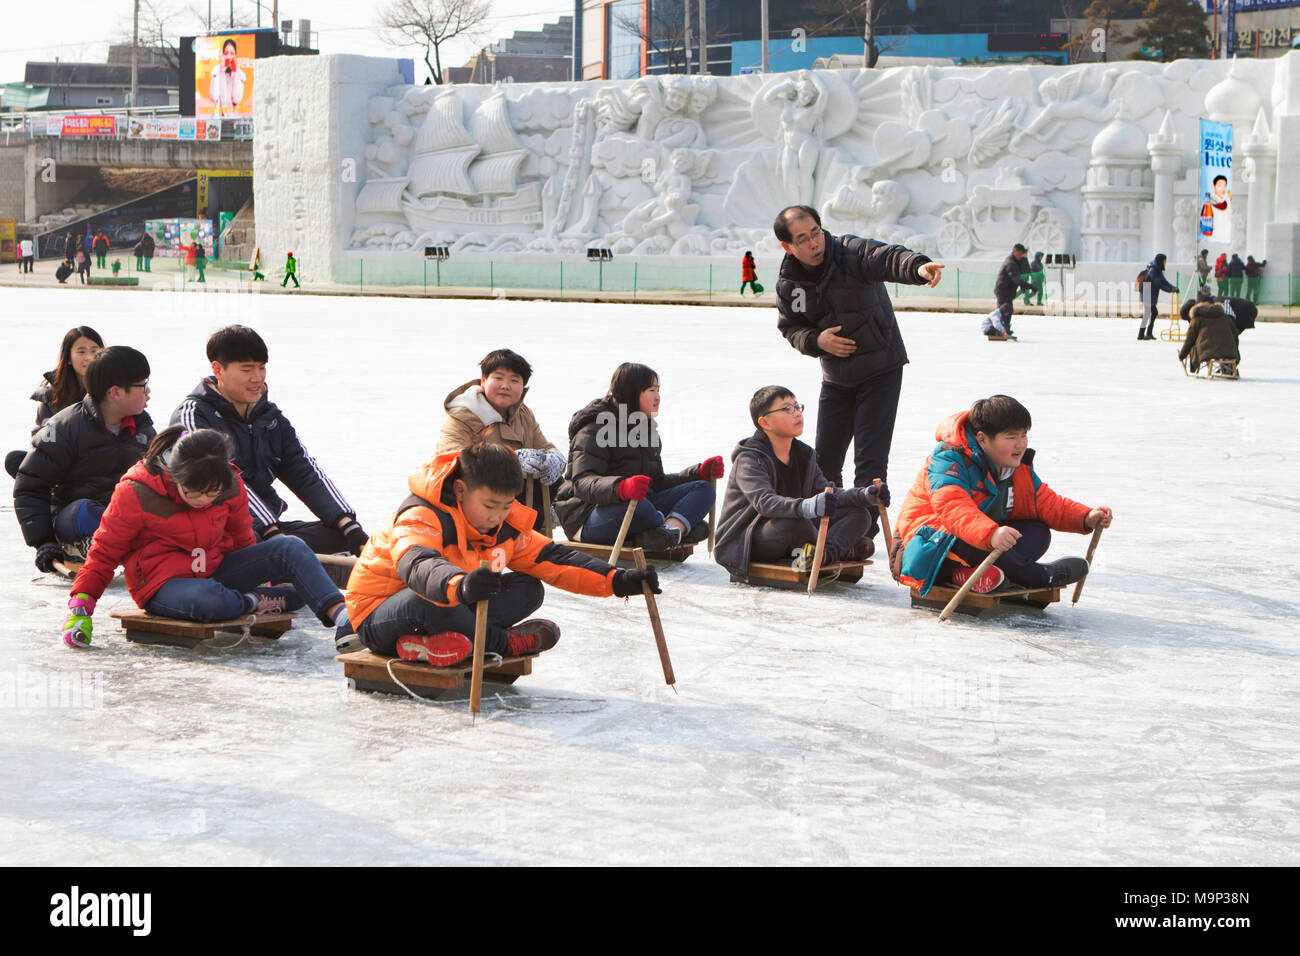 Eine Gruppe der Koreanischen Schule Kinder tun ein Rodeln Wettbewerb. Die Hwacheon Sancheoneo Ice Festival ist eine Tradition für die Menschen in Korea. Jedes Jahr im Januar Menschenmassen versammeln sich auf dem zugefrorenen Fluss der Kälte und dem Schnee des Winters zu feiern. Hauptattraktion ist Eisfischen. Jung und Alt warten geduldig auf ein kleines Loch im Eis für eine Forelle zu beißen. In zelten Sie können den Fisch vom Grill, nach dem sie gegessen werden. Unter anderem sind Rodeln und Eislaufen. Die in der Nähe Pyeongchang Region wird Gastgeber der Olympischen Winterspiele im Februar 2018. Stockfoto